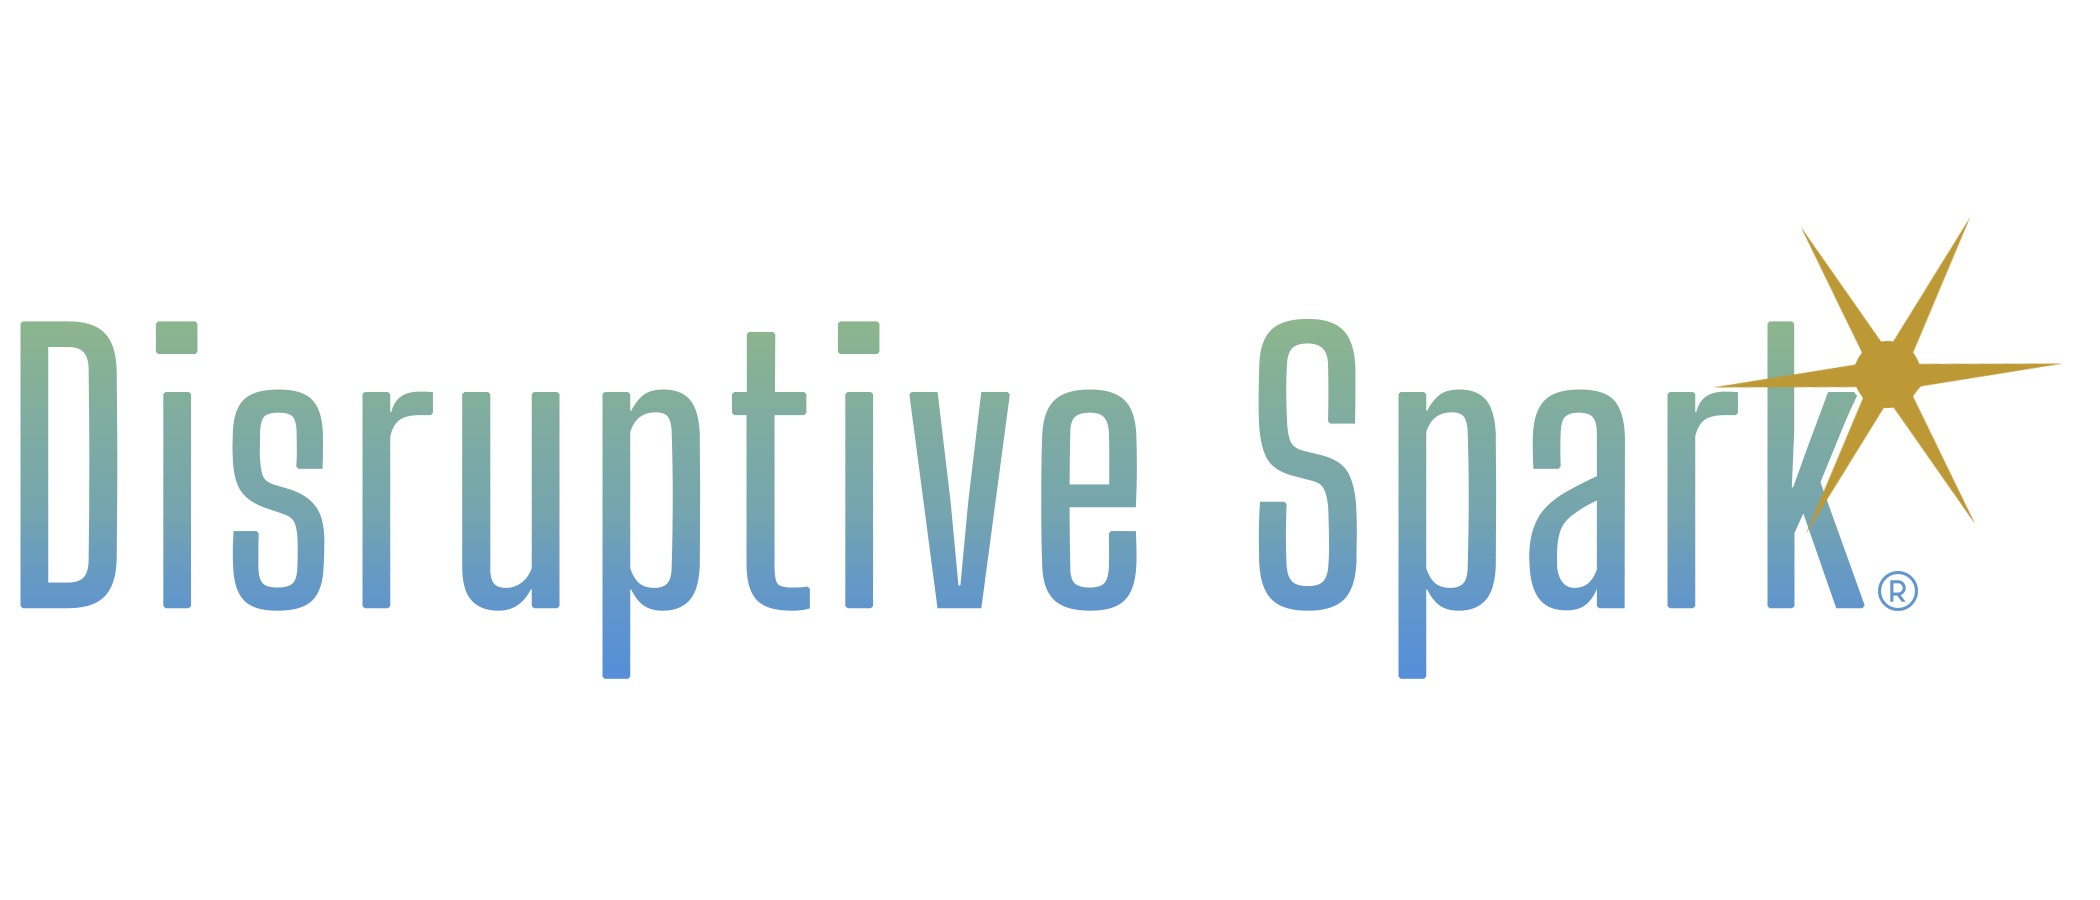 Disruptive spark logo